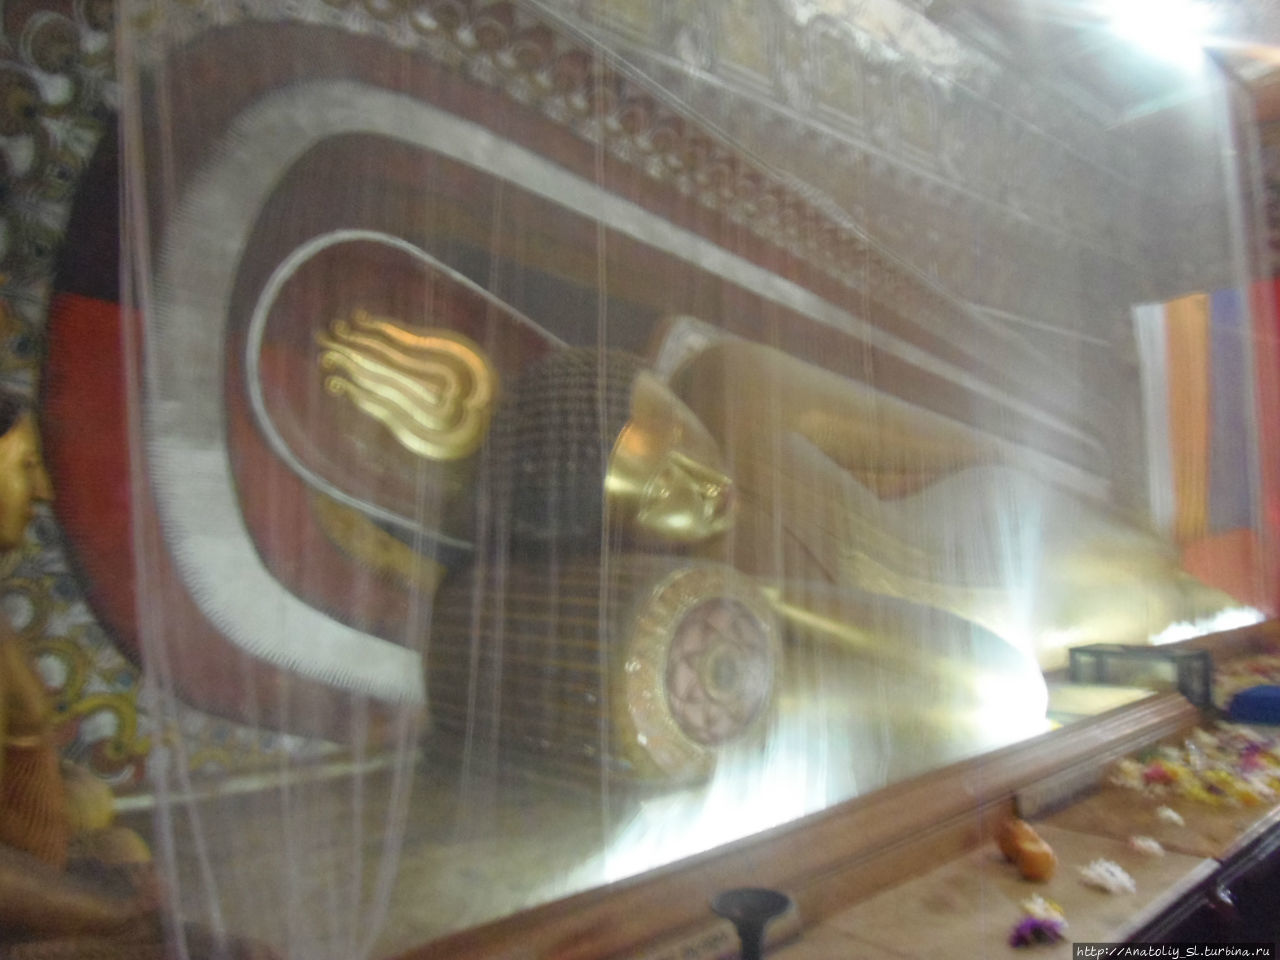 Внутри храма находится большая статуя лежащего Будды, длиной около 8 метров. Келания, Шри-Ланка